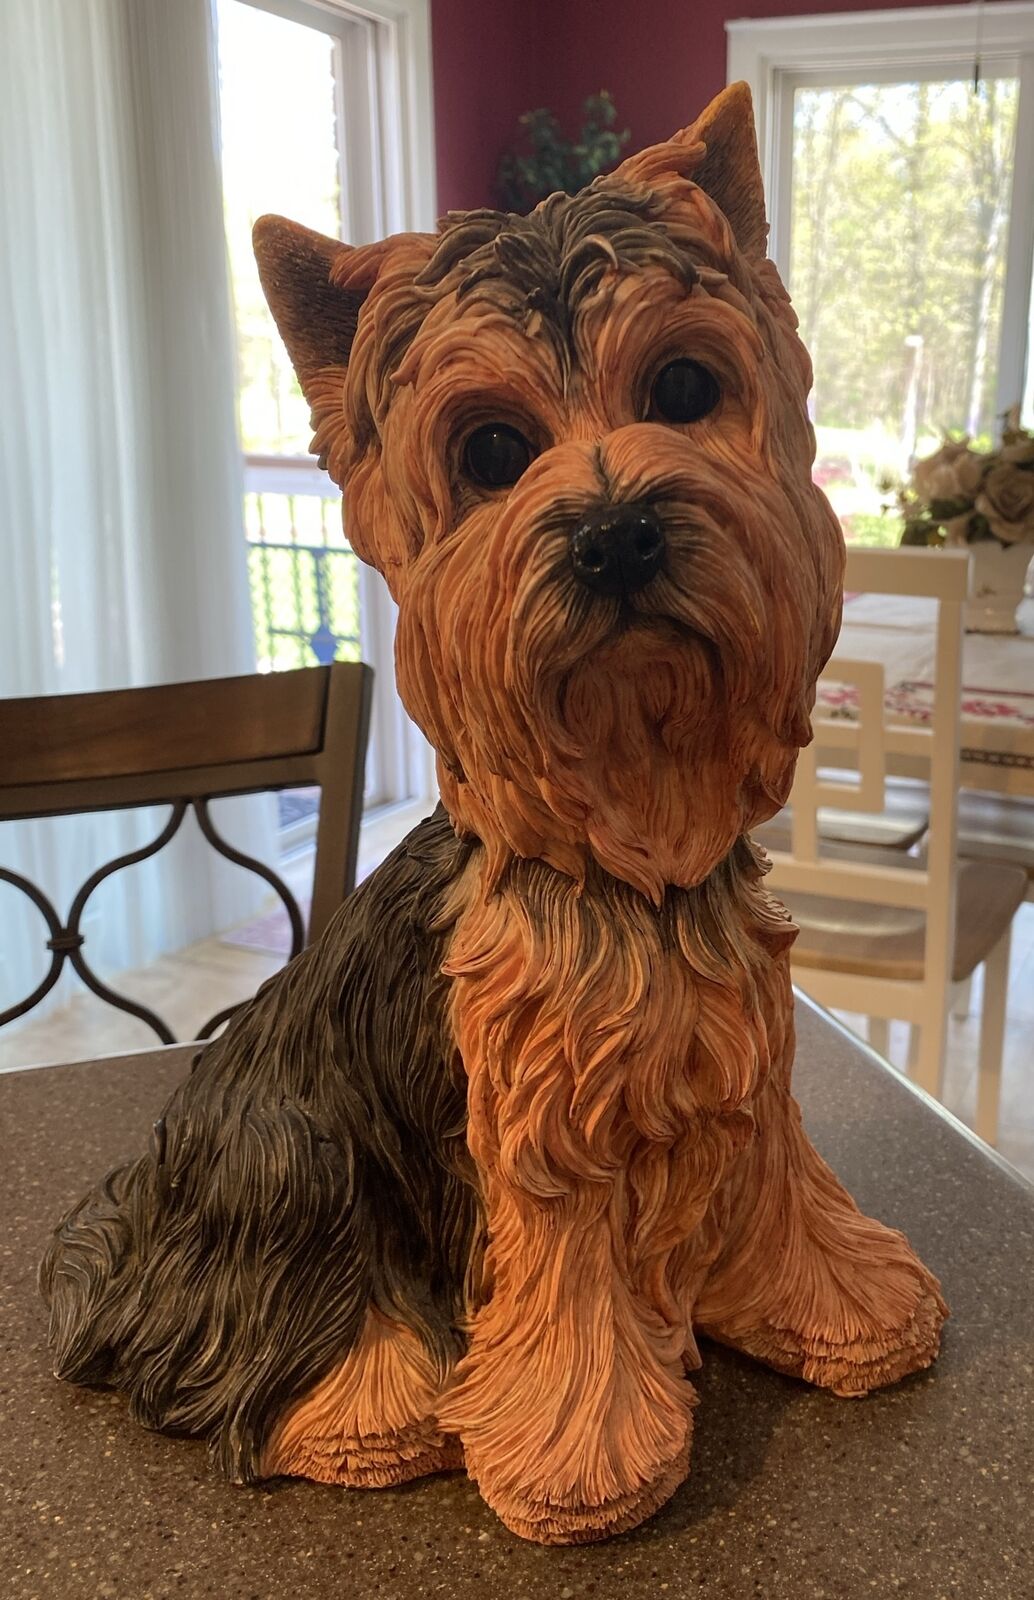 VTG Life size 13 X 10 handcrafted Yorkshire terrier dog sculpture Plaster Cast?